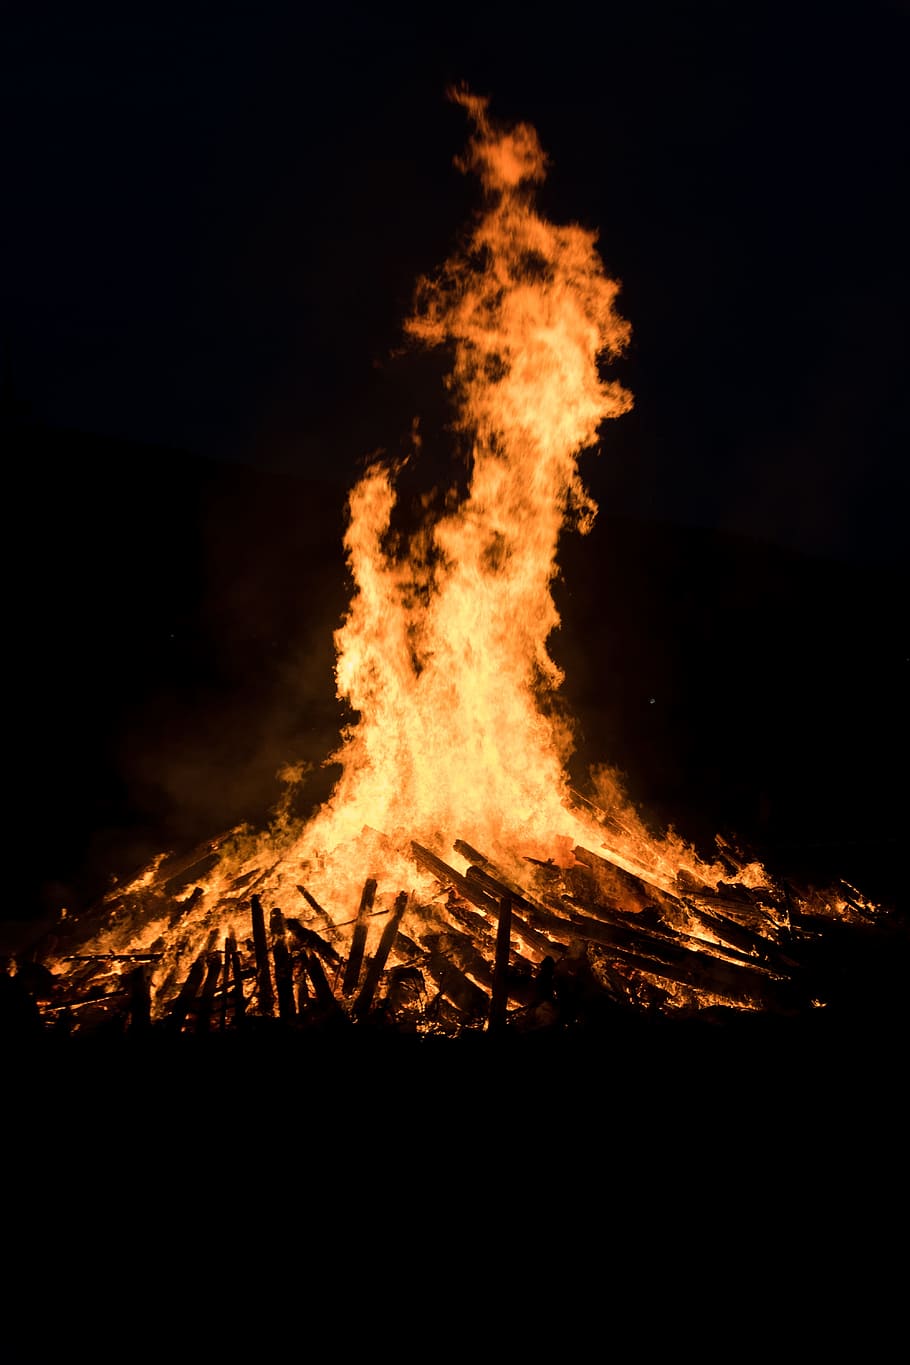 火, 炎, 夏至, 真夏の火祭り, 5月の火, fellingshausen, biebertal, 熱い, 熱, 木